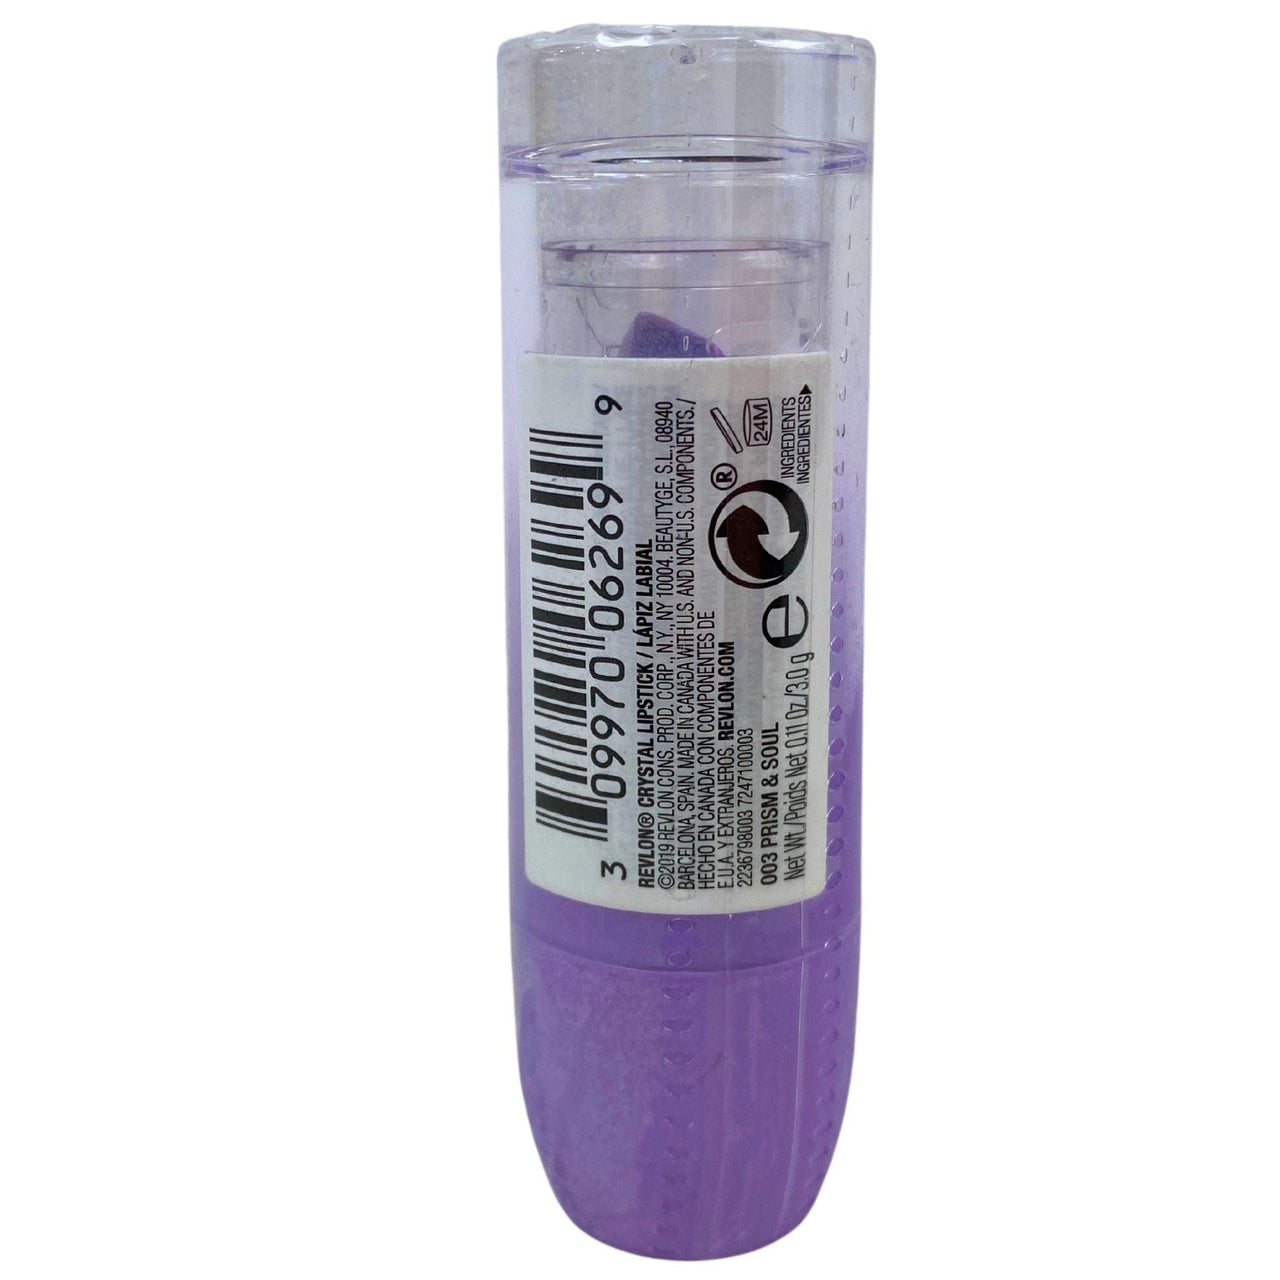 Revlon Crystal Lipstick 003 Prism & Soul 0.11oz (60 Pcs Lot) - Discount Wholesalers Inc